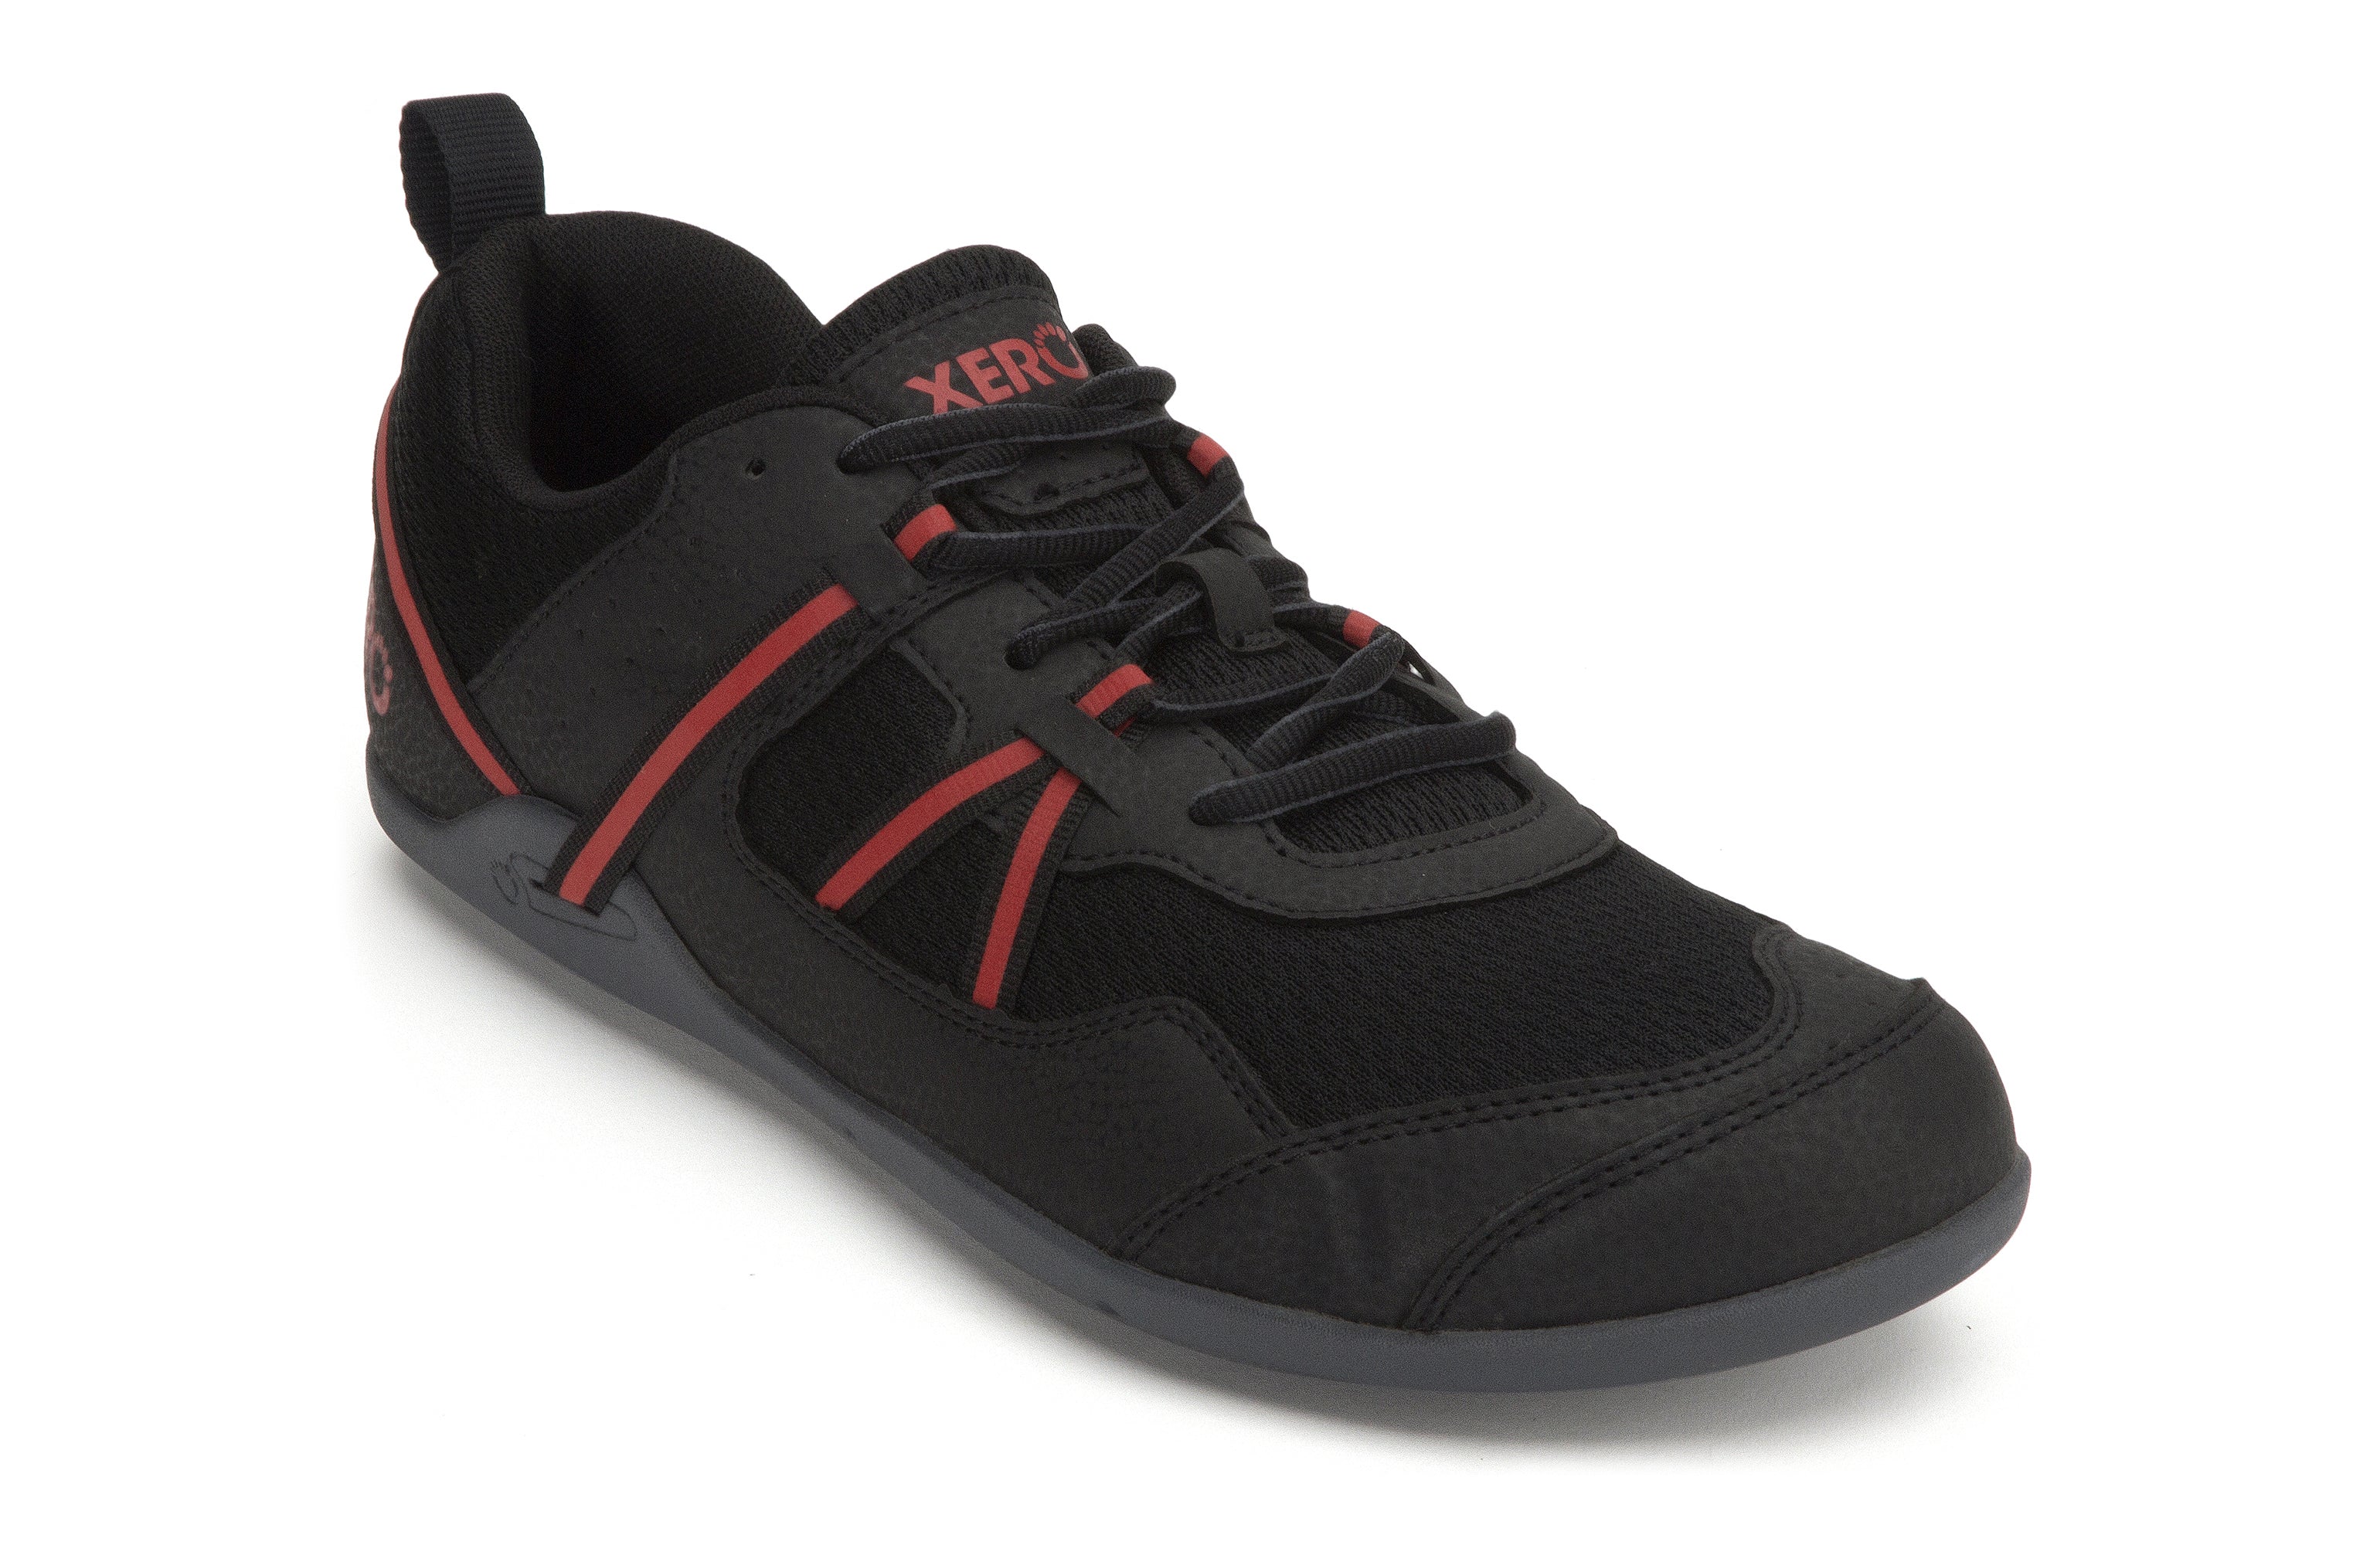 Xero Shoes Prio barfods løbesko/træningssko til mænd i farven black / samba red, vinklet